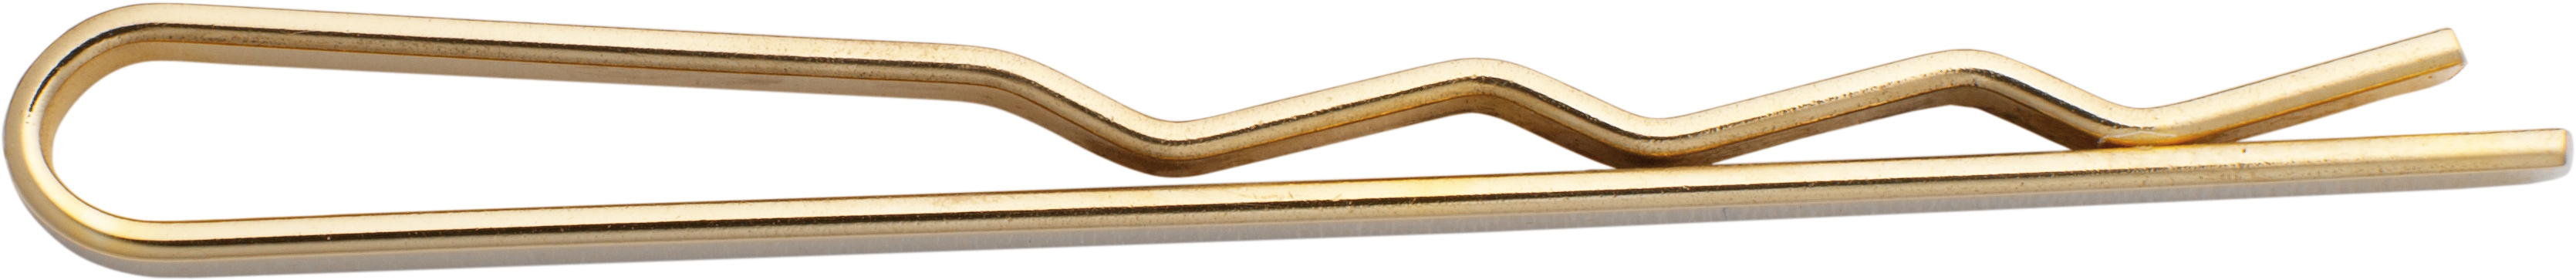 Tie clip gold 585/-Gg, L 48,00 x W 2,80mm